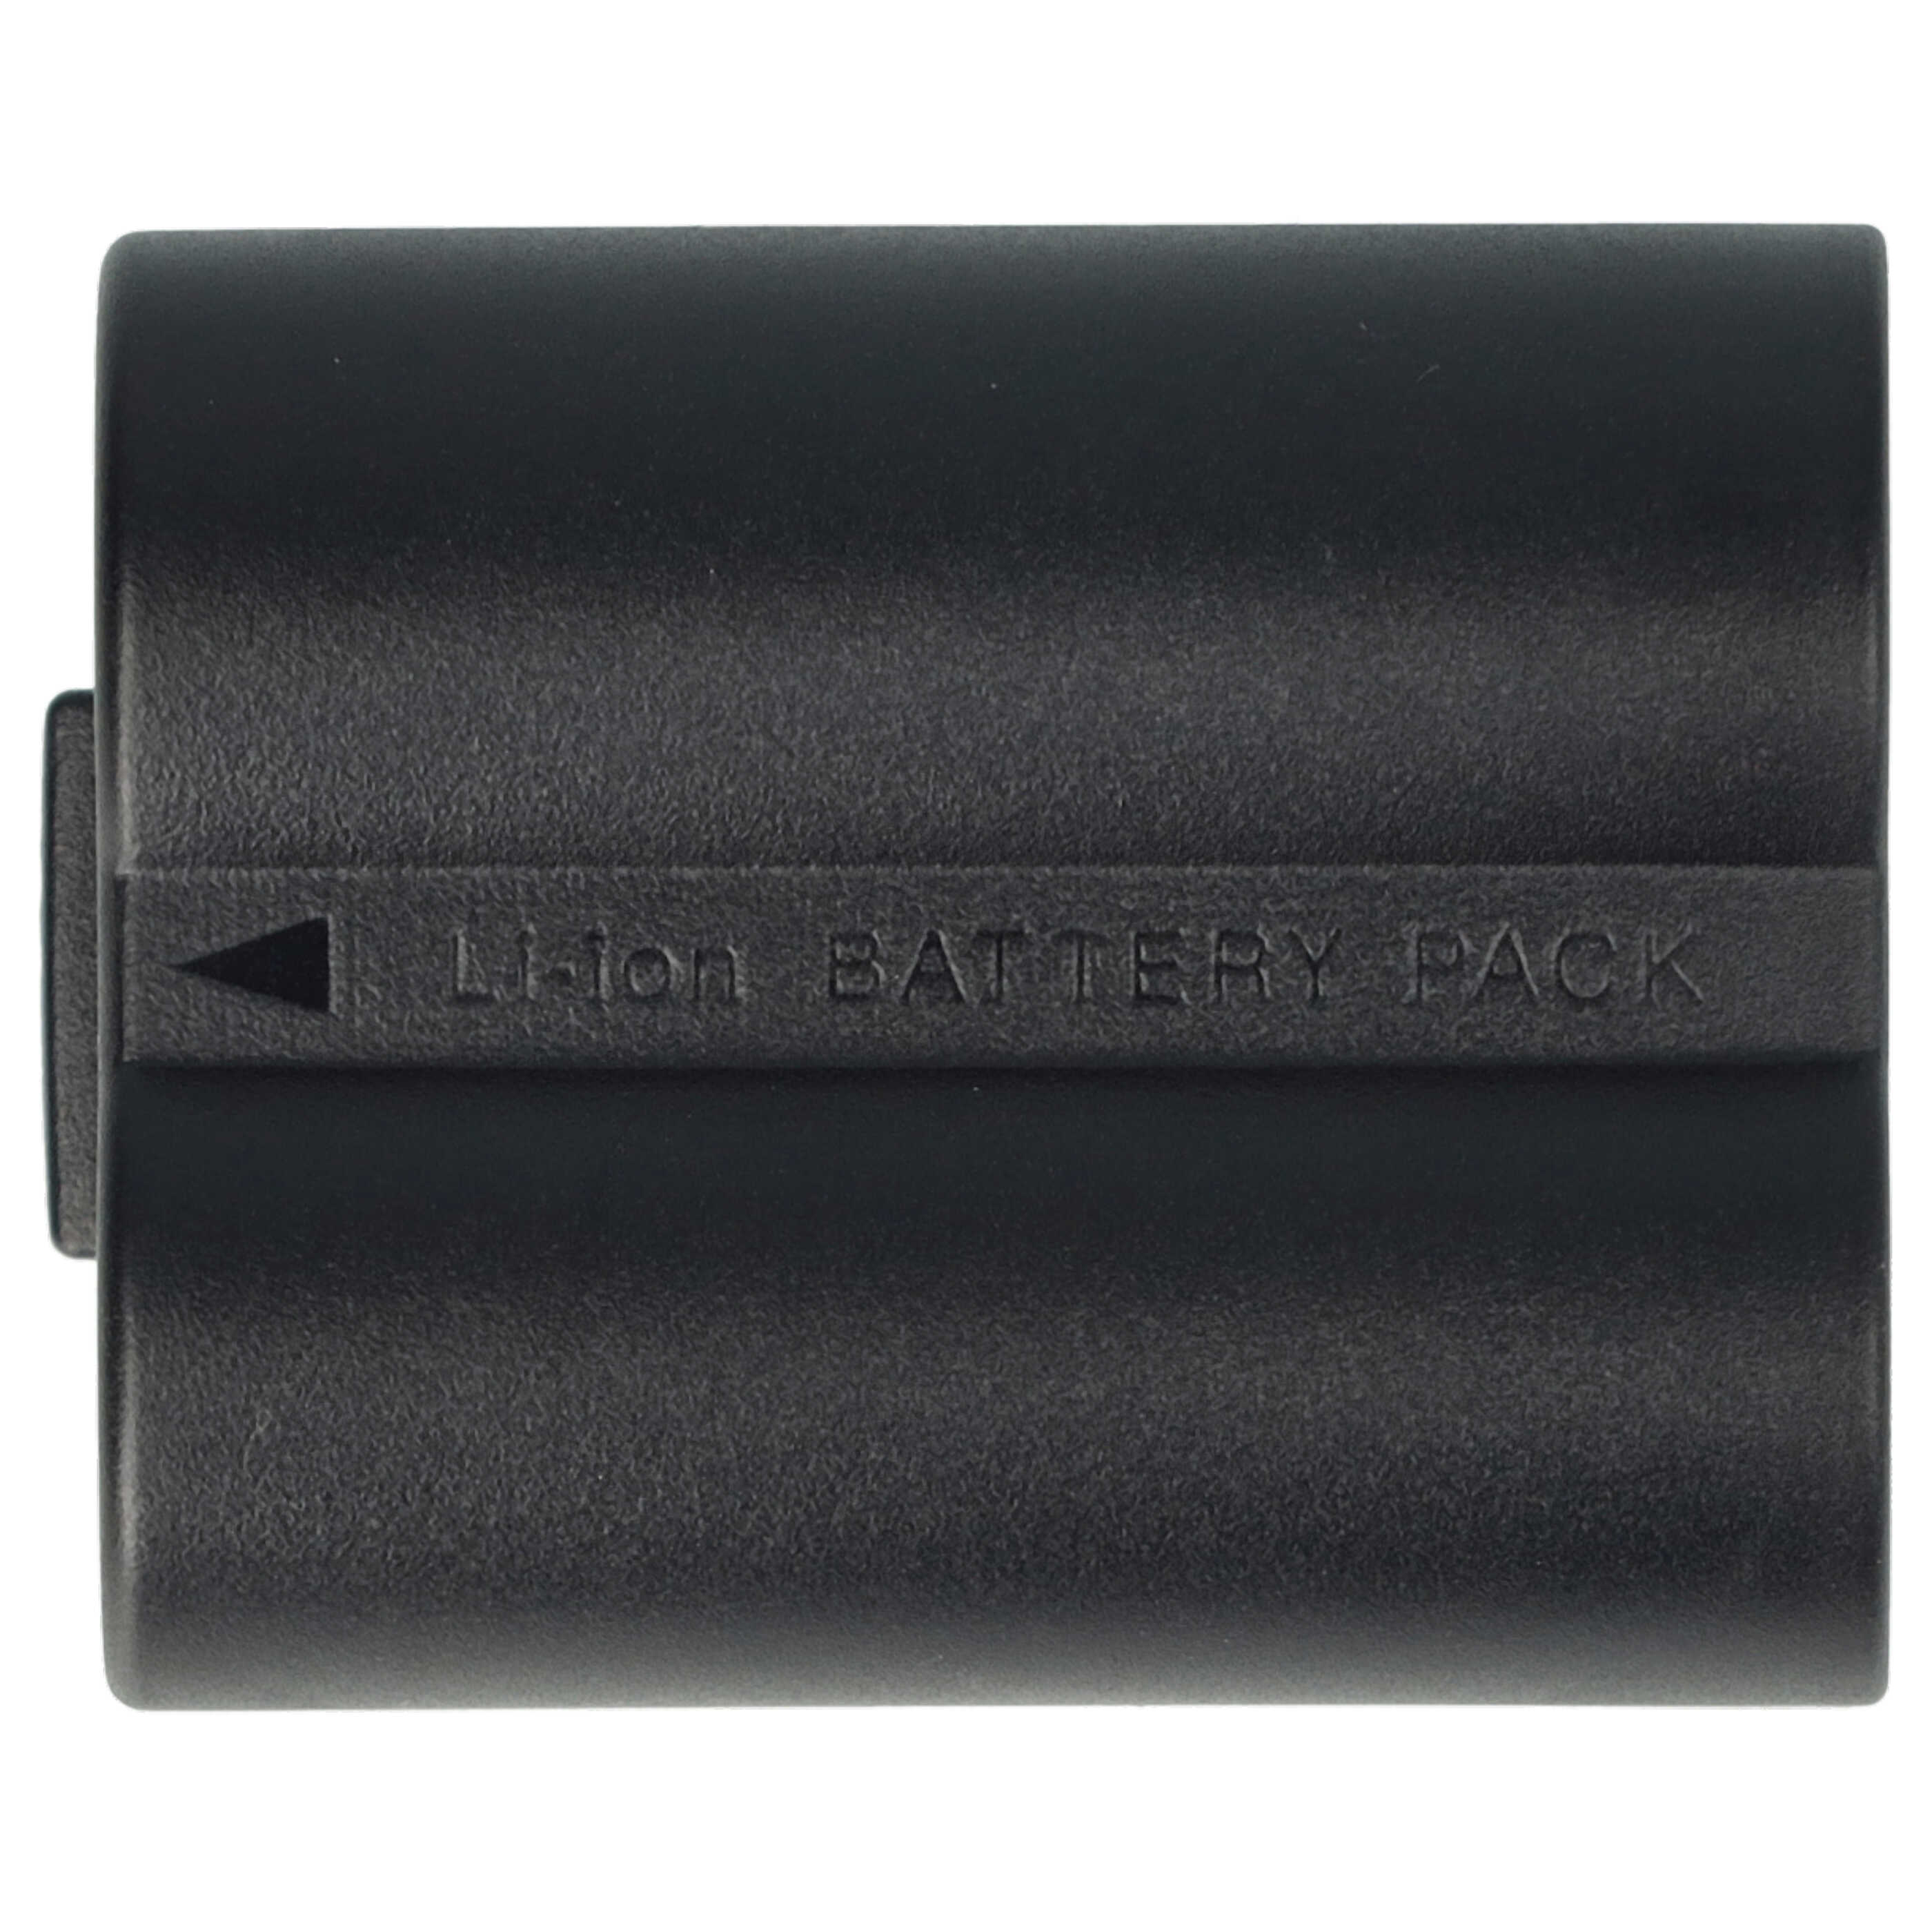 2x Batería reemplaza Leica BP-DC5 para cámara Leica - 600 mAh 7,2 V Li-Ion